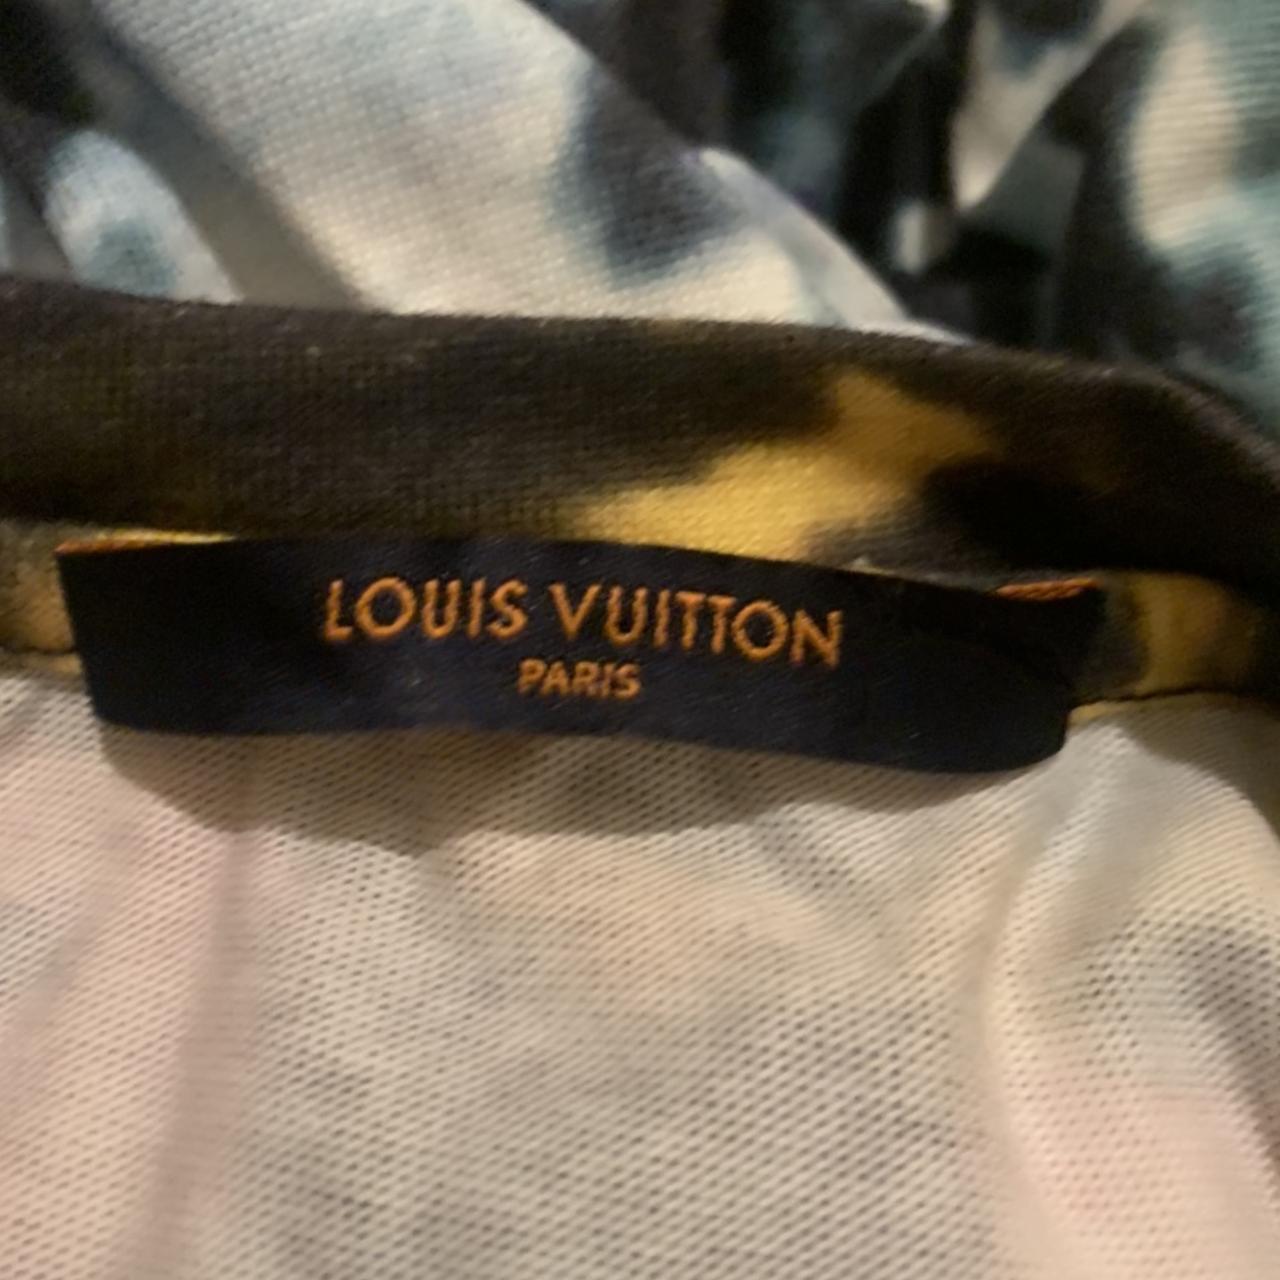 Louis Vuitton plain Rainbow Tie Dye T-shirt size L - Depop